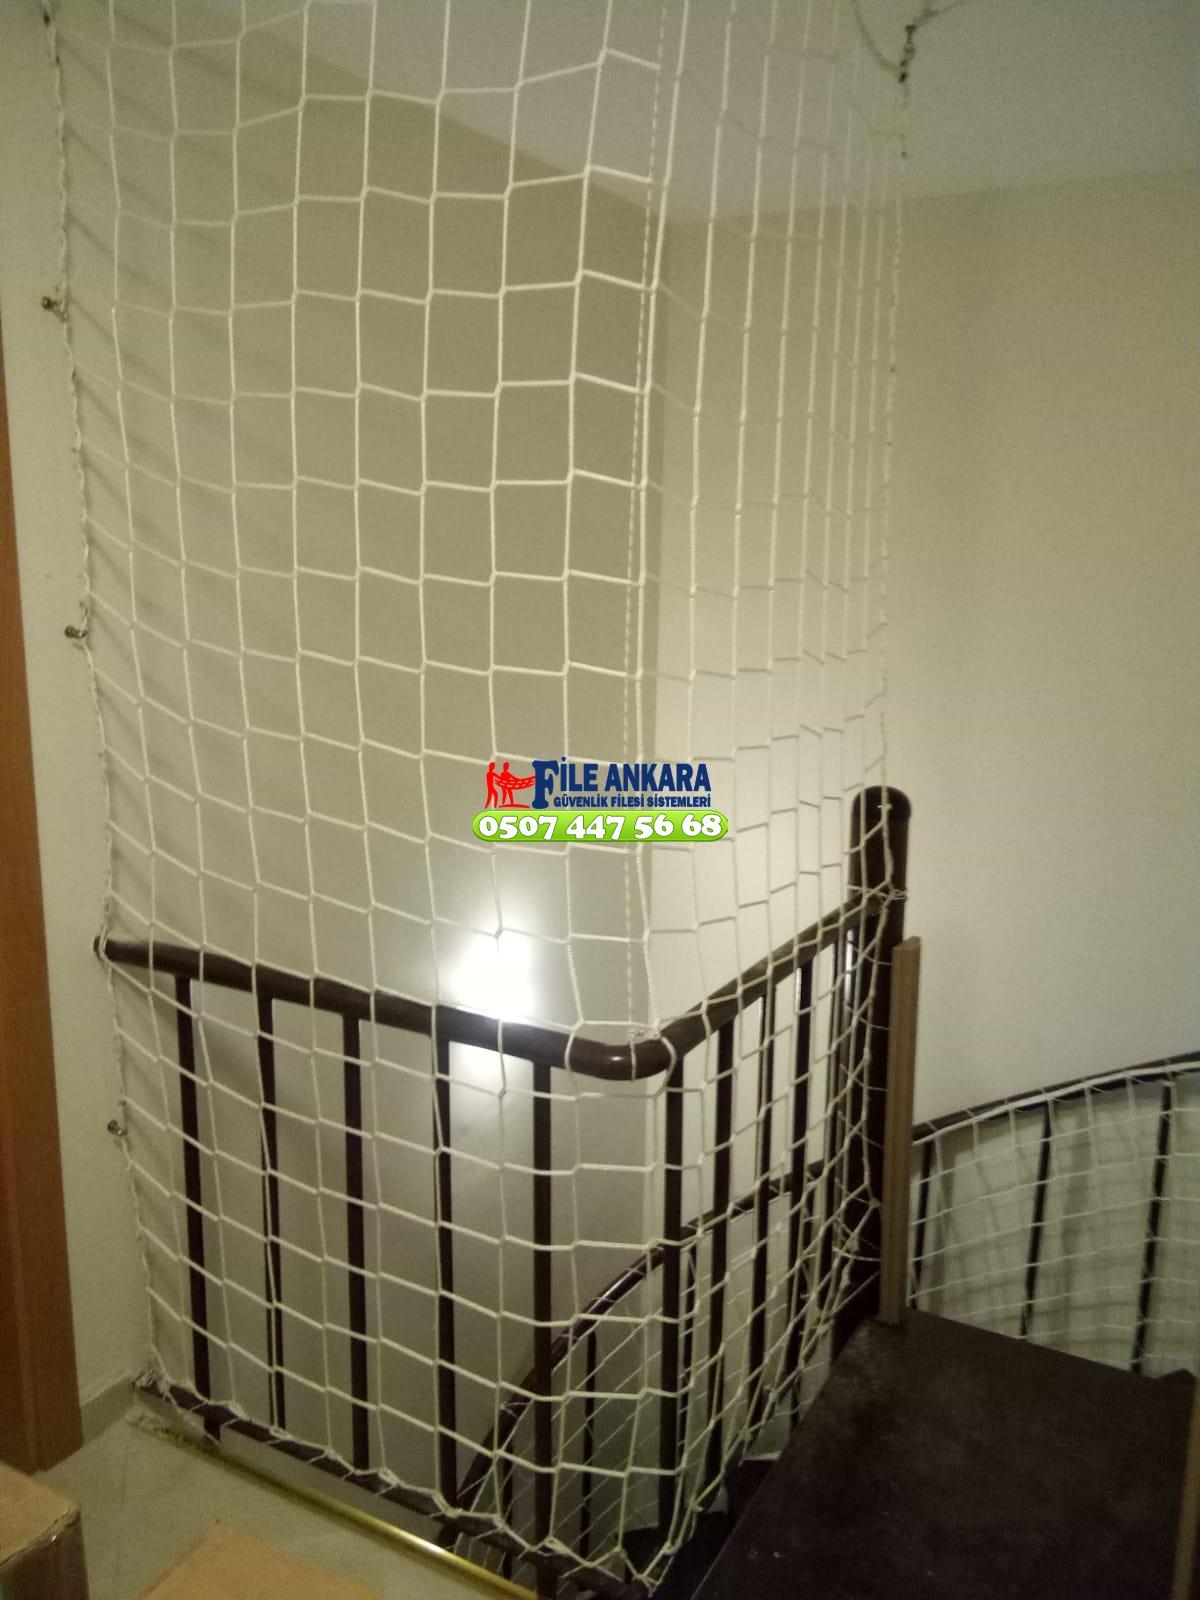  Bilkent Balkon  koruma filesi - Merdiven filesi - En ucuz balkon güvenlik filesi satış ve montajı 0507 447 56 68